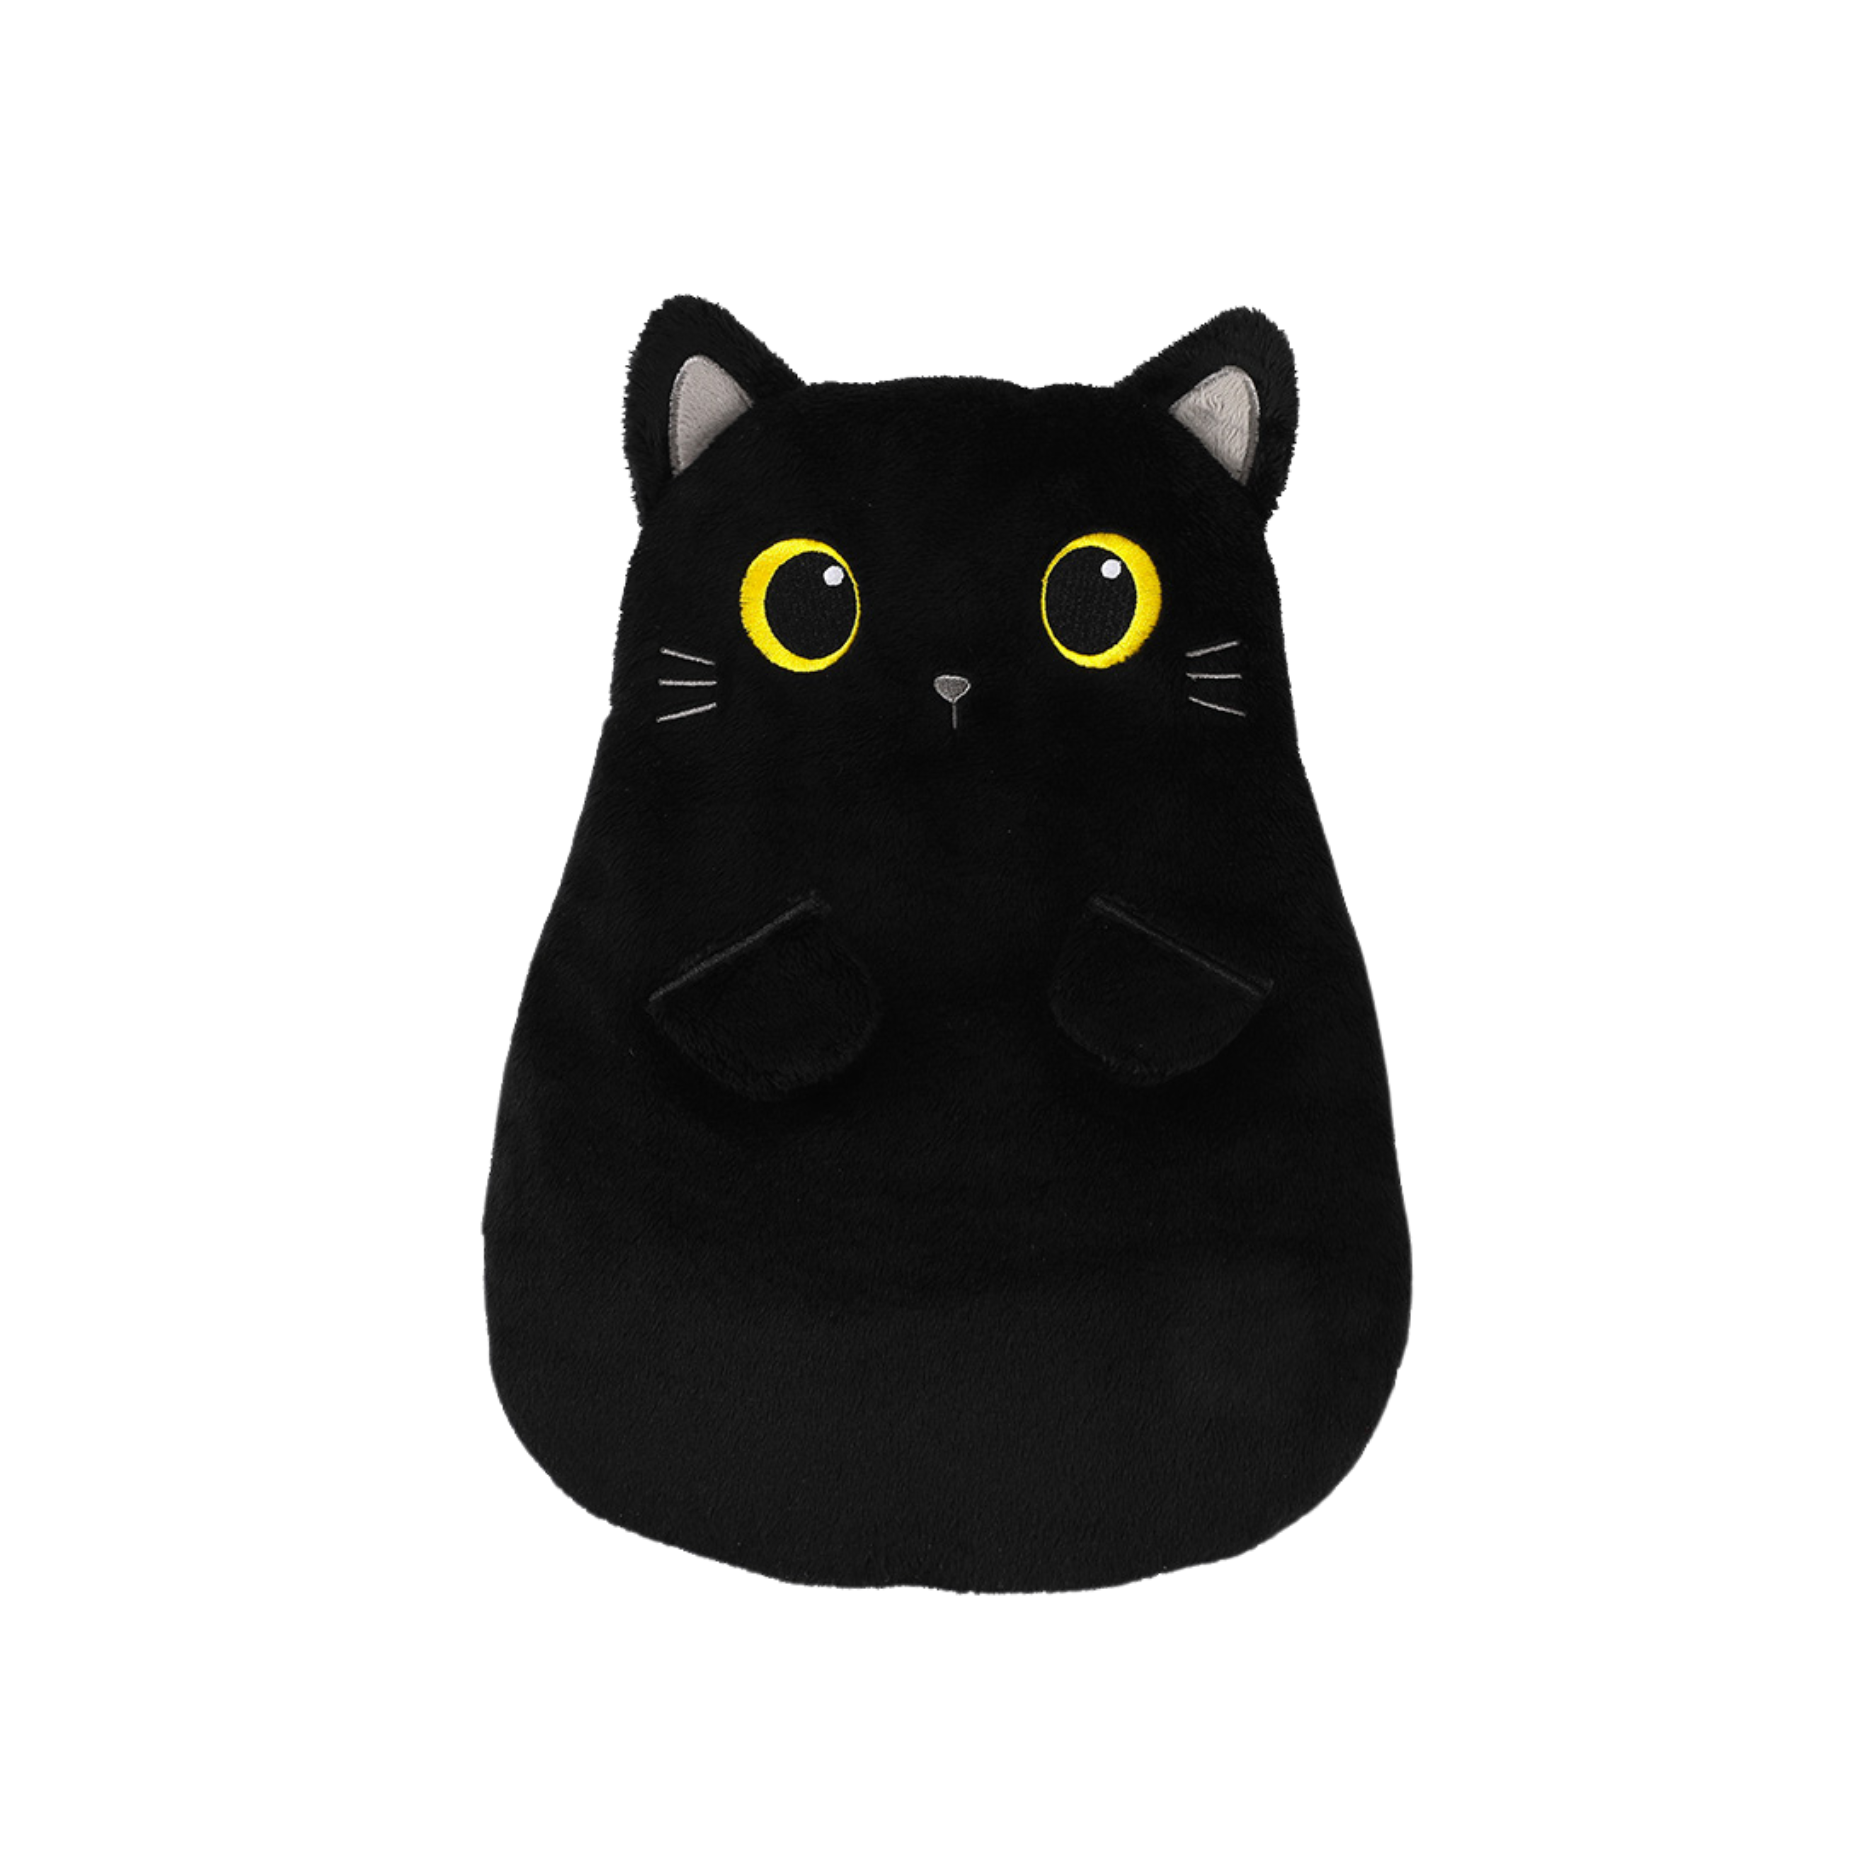 Cuscino Termico con Semi di Miglio - Black cat